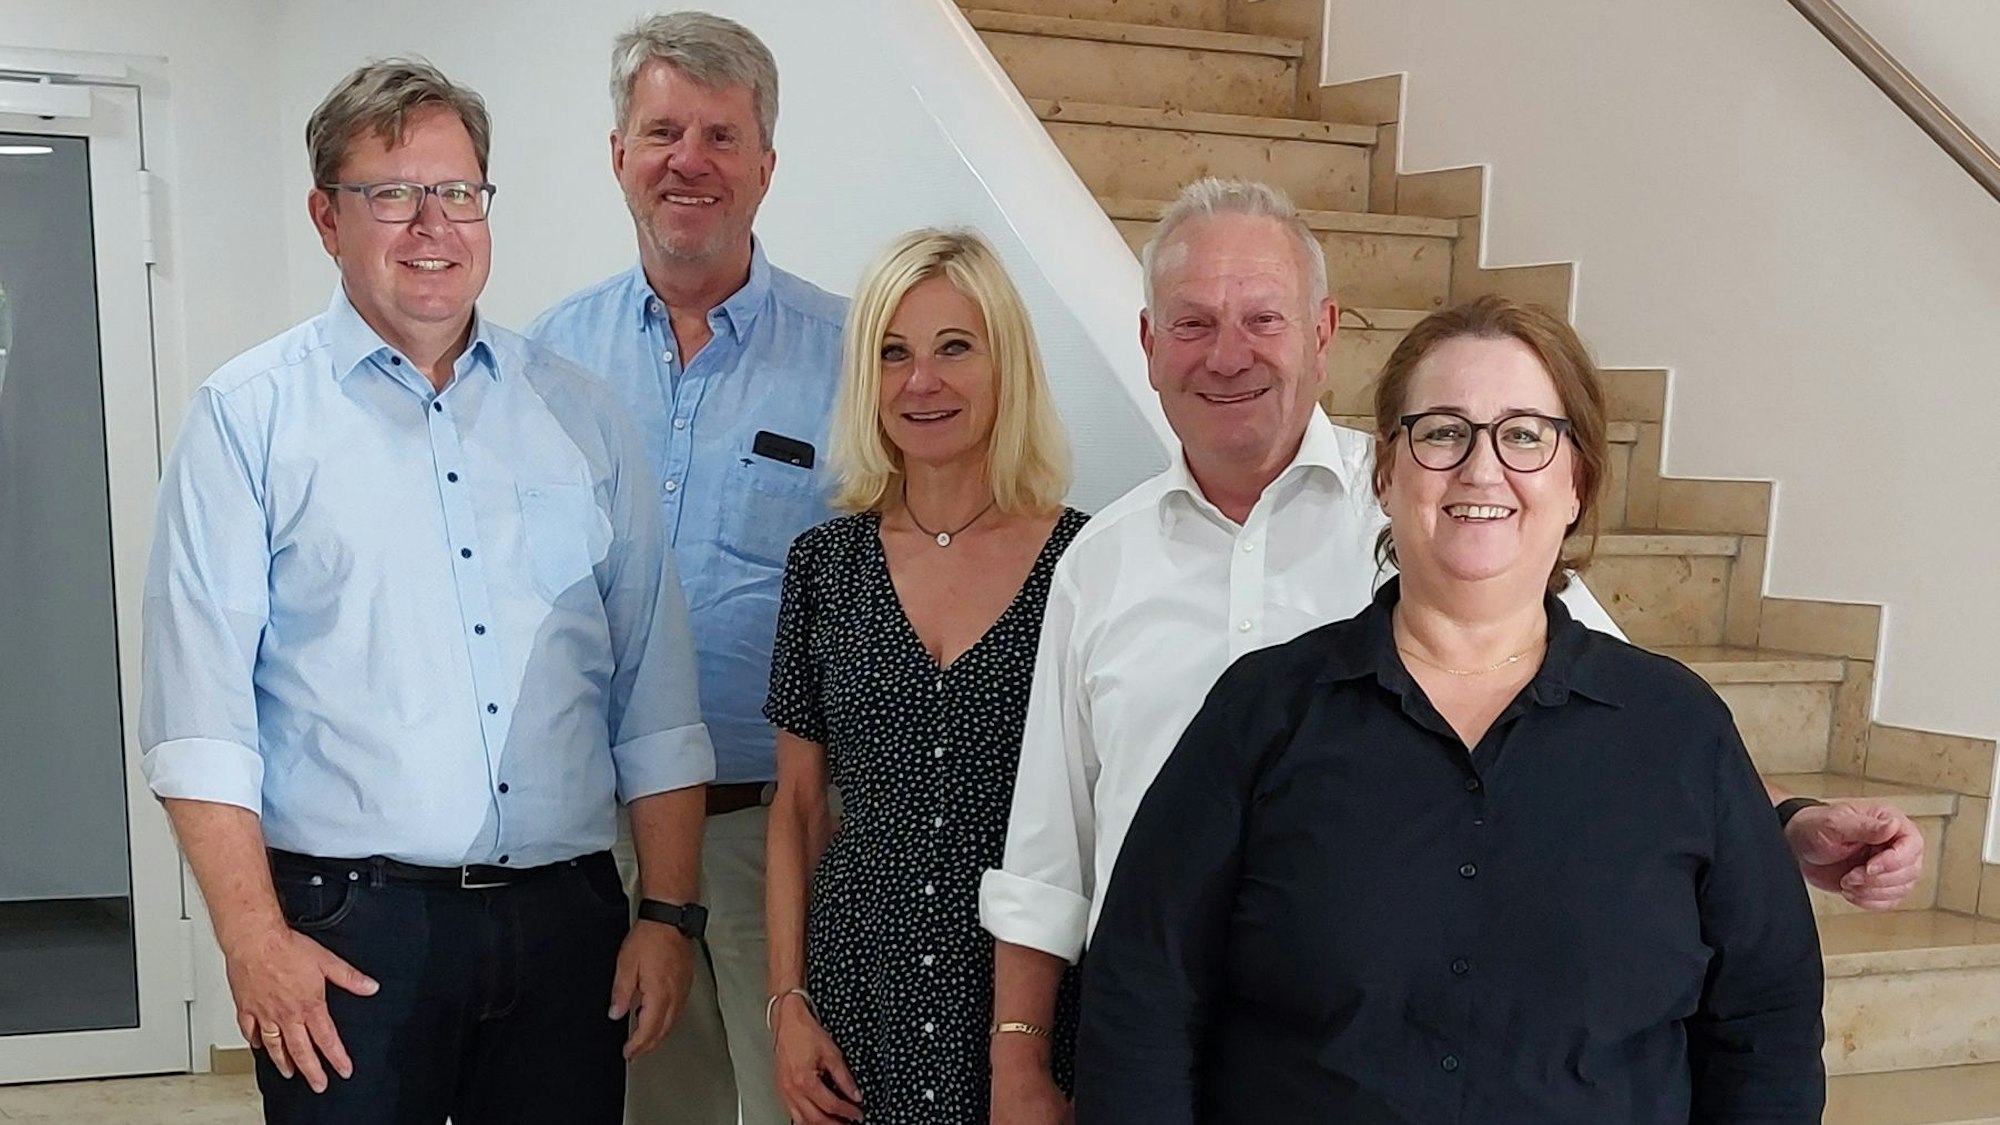 Dezernent Christoph Herrmann, Bondina Schulze und das Unternehmerpaar Doris und Peter Remshagen stehen vor einer Treppe.